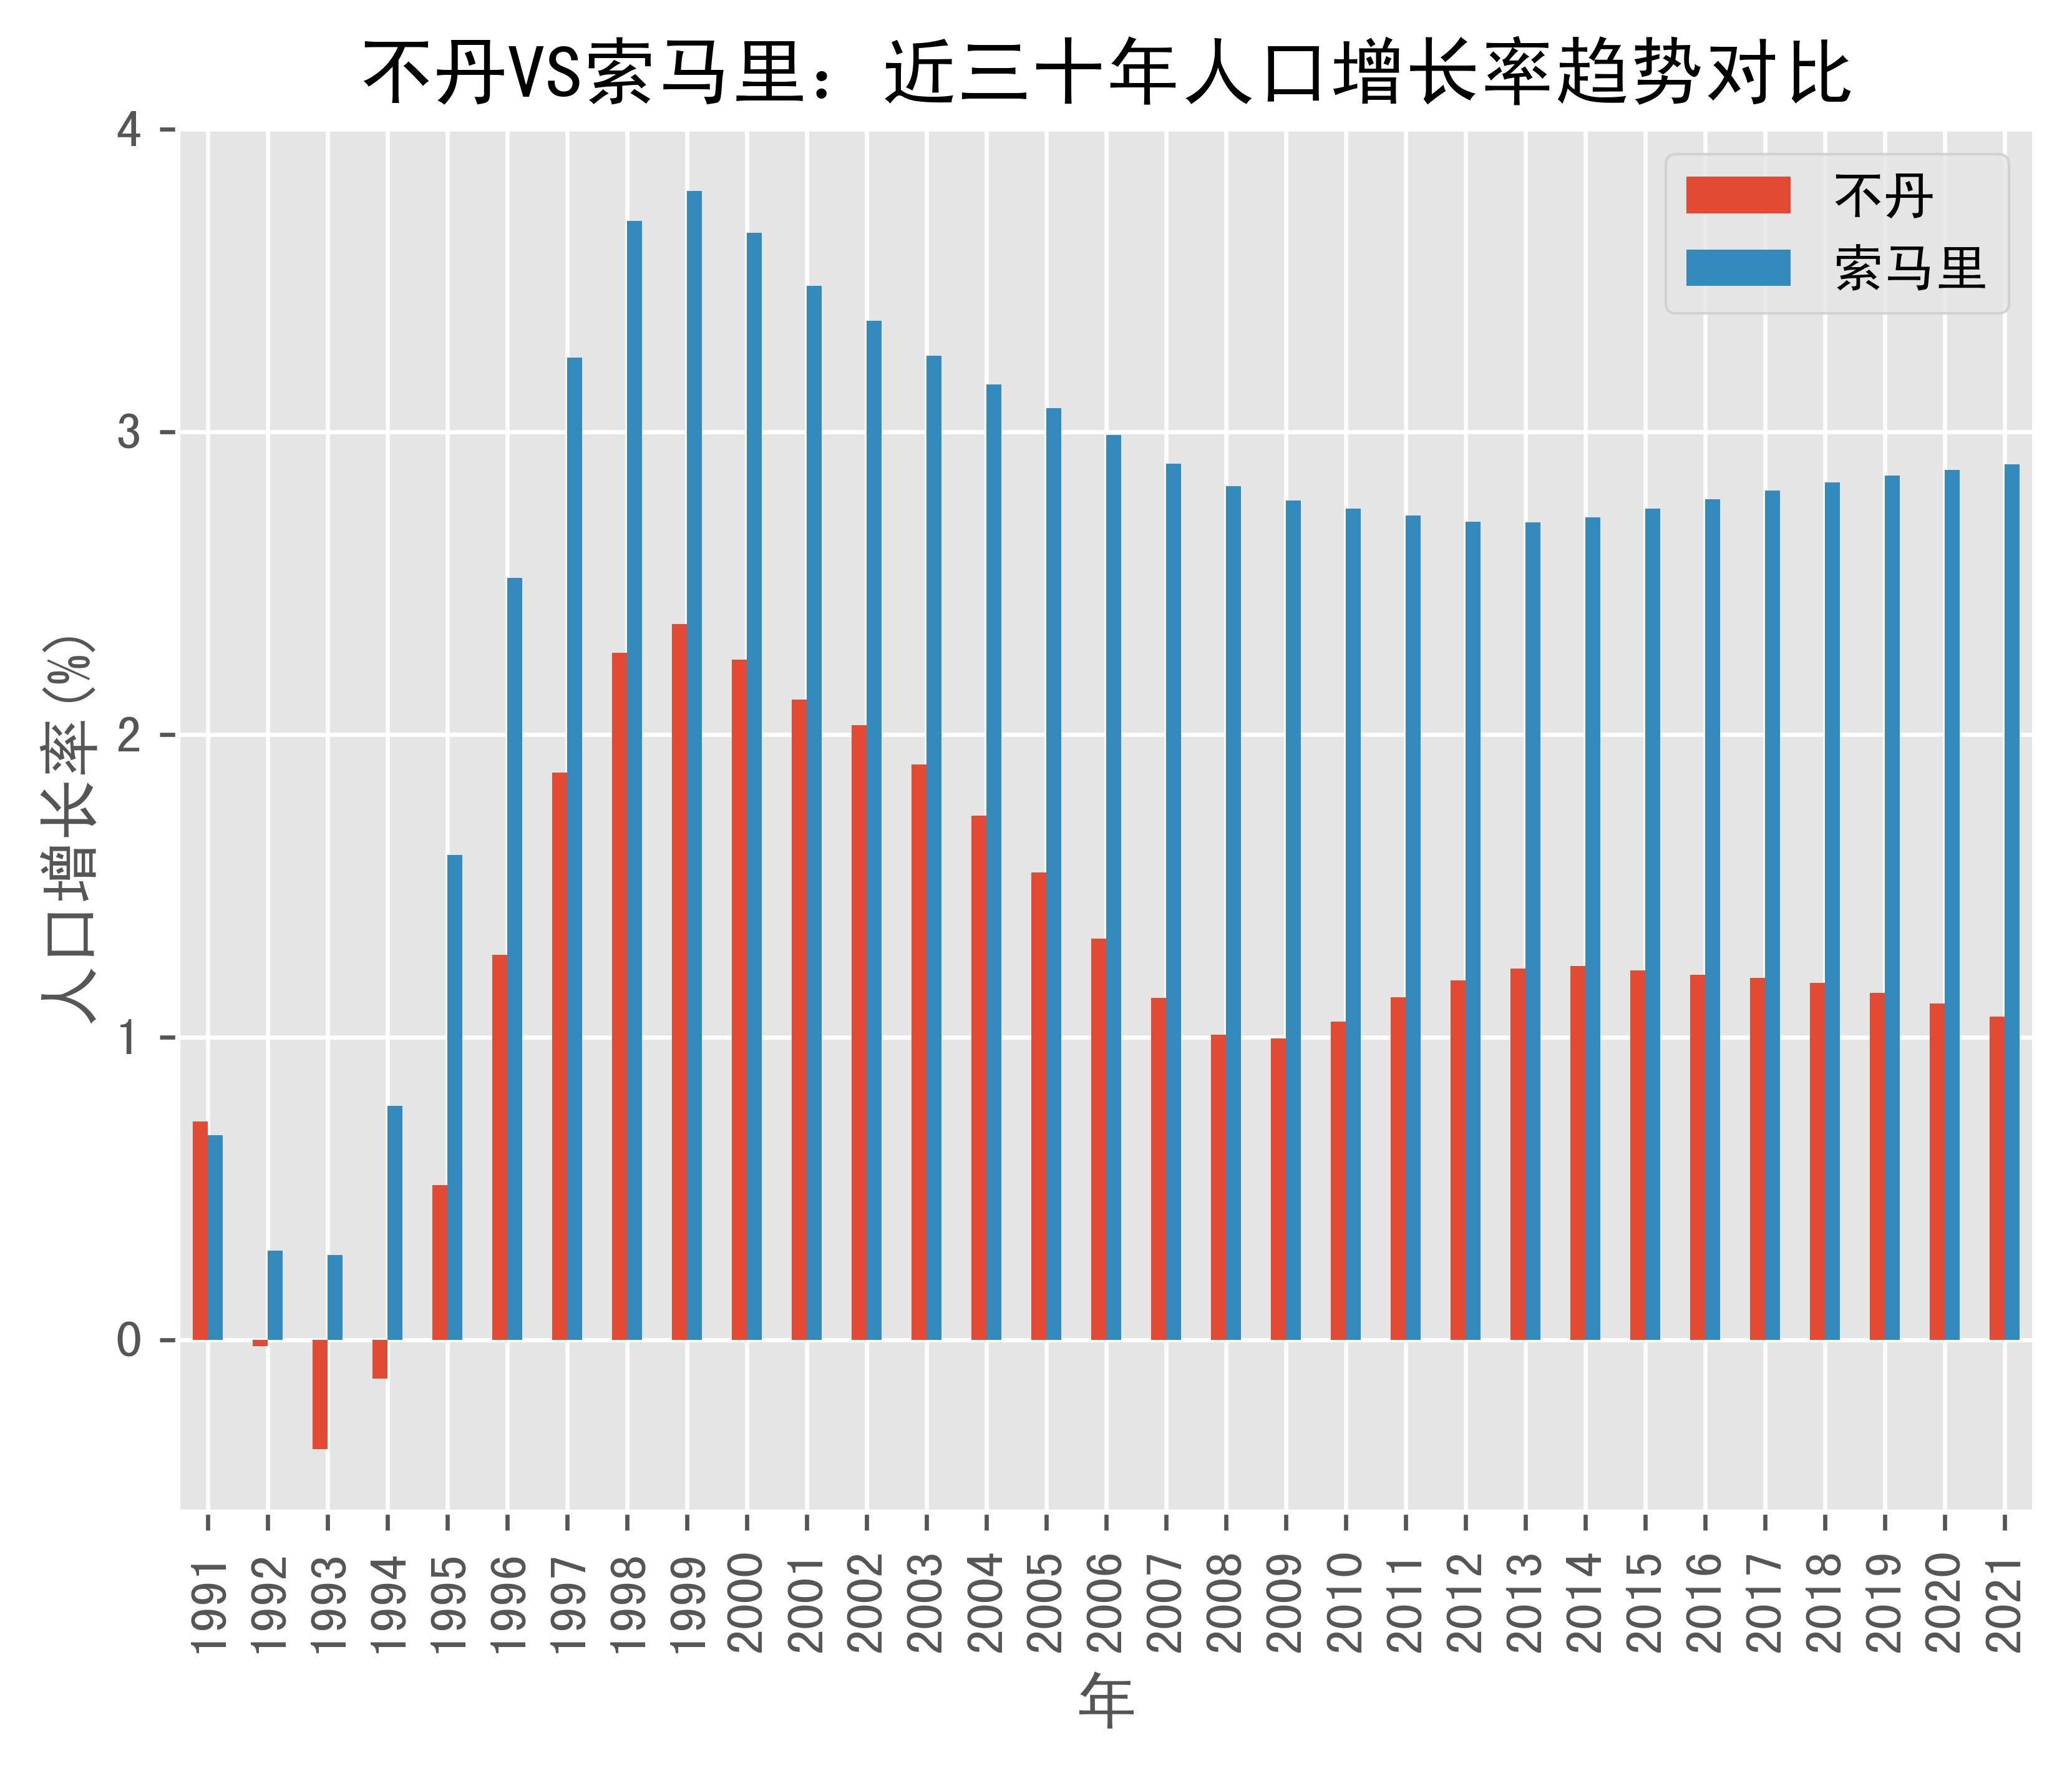 不丹vs索马里人口增长率趋势对比(1991年